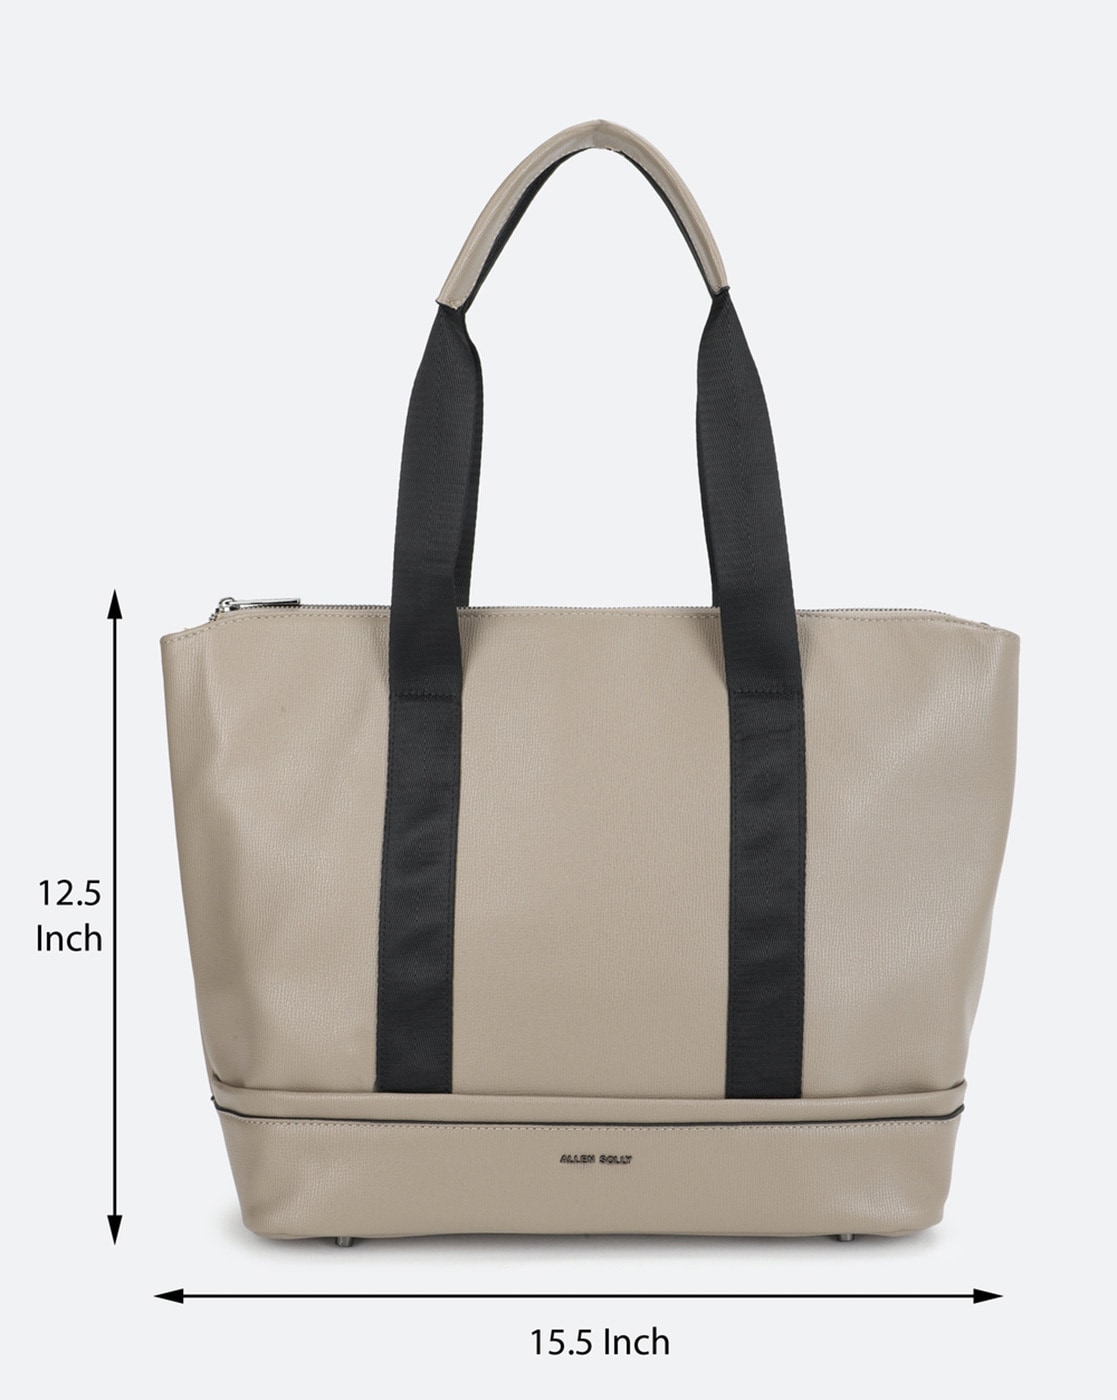 Buy Allen Solly Women's Sling Bag (Beige) at Amazon.in